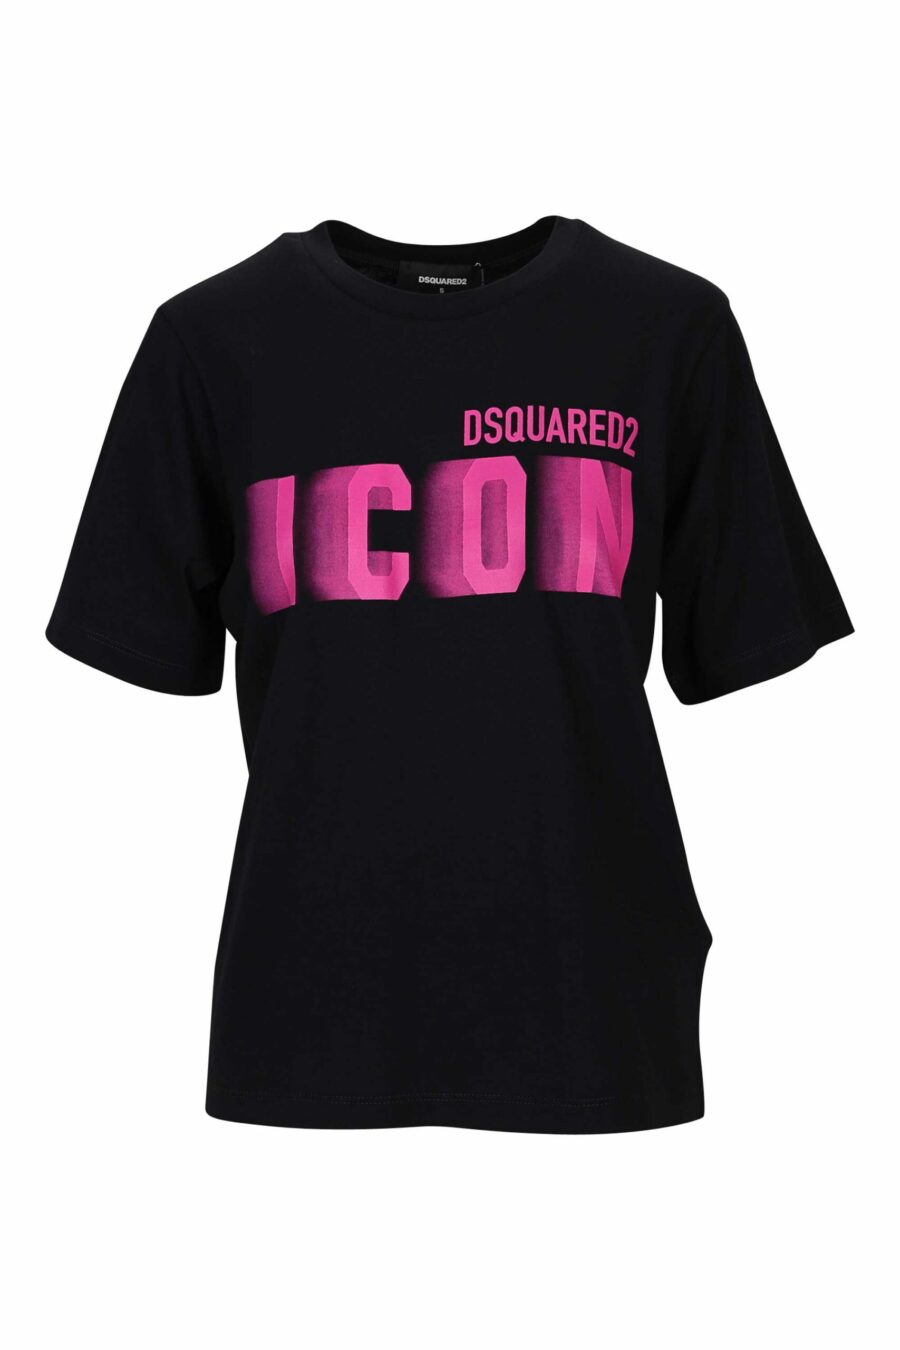 Camiseta negra con logo fucsia neon borroso - 8054148406530 scaled